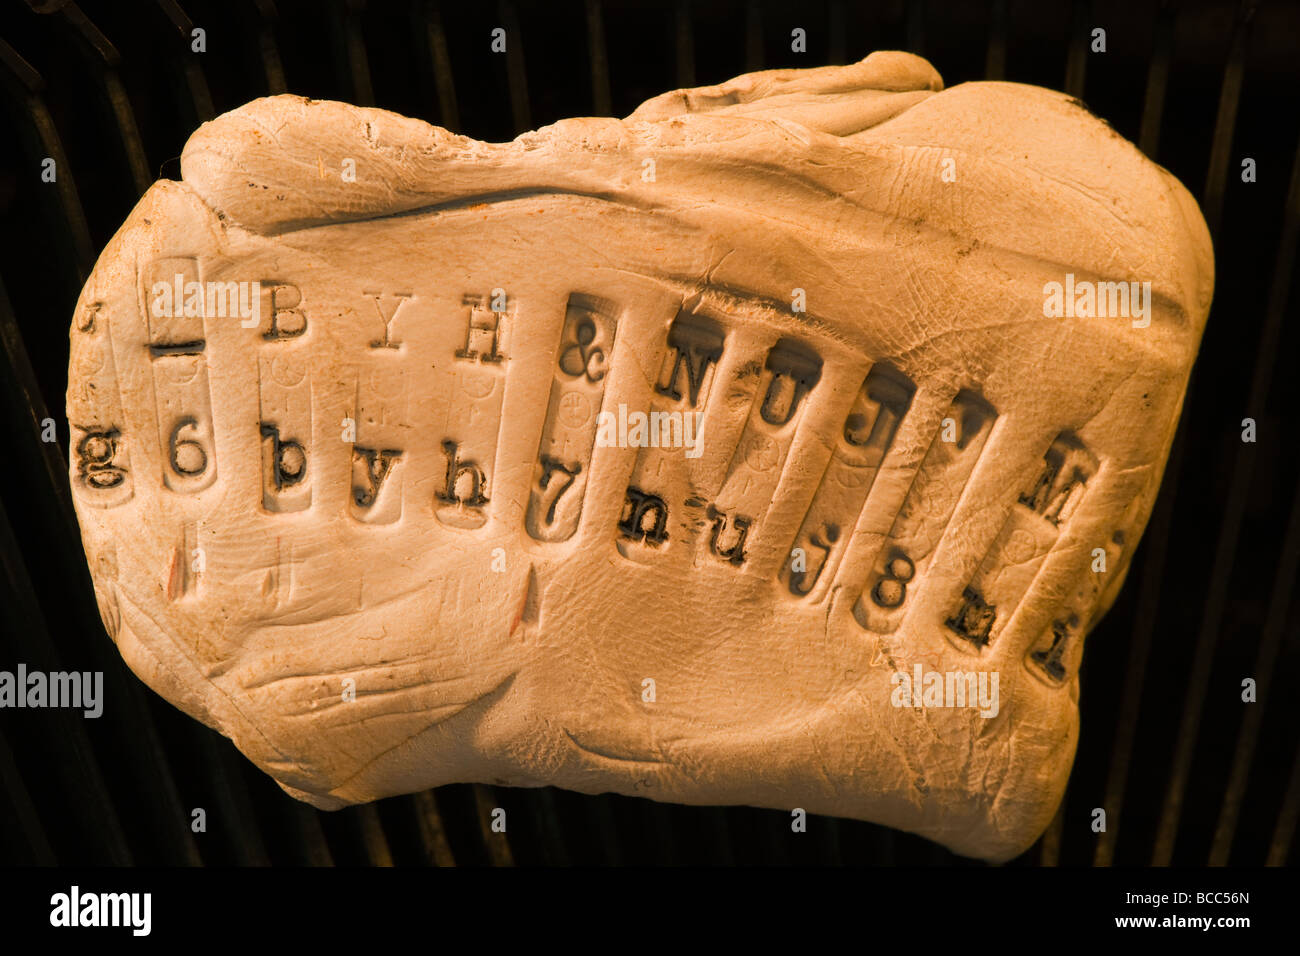 Touches de caractères de la vieille machine à écrire manuelle impressionné sur la pâte à modeler Banque D'Images